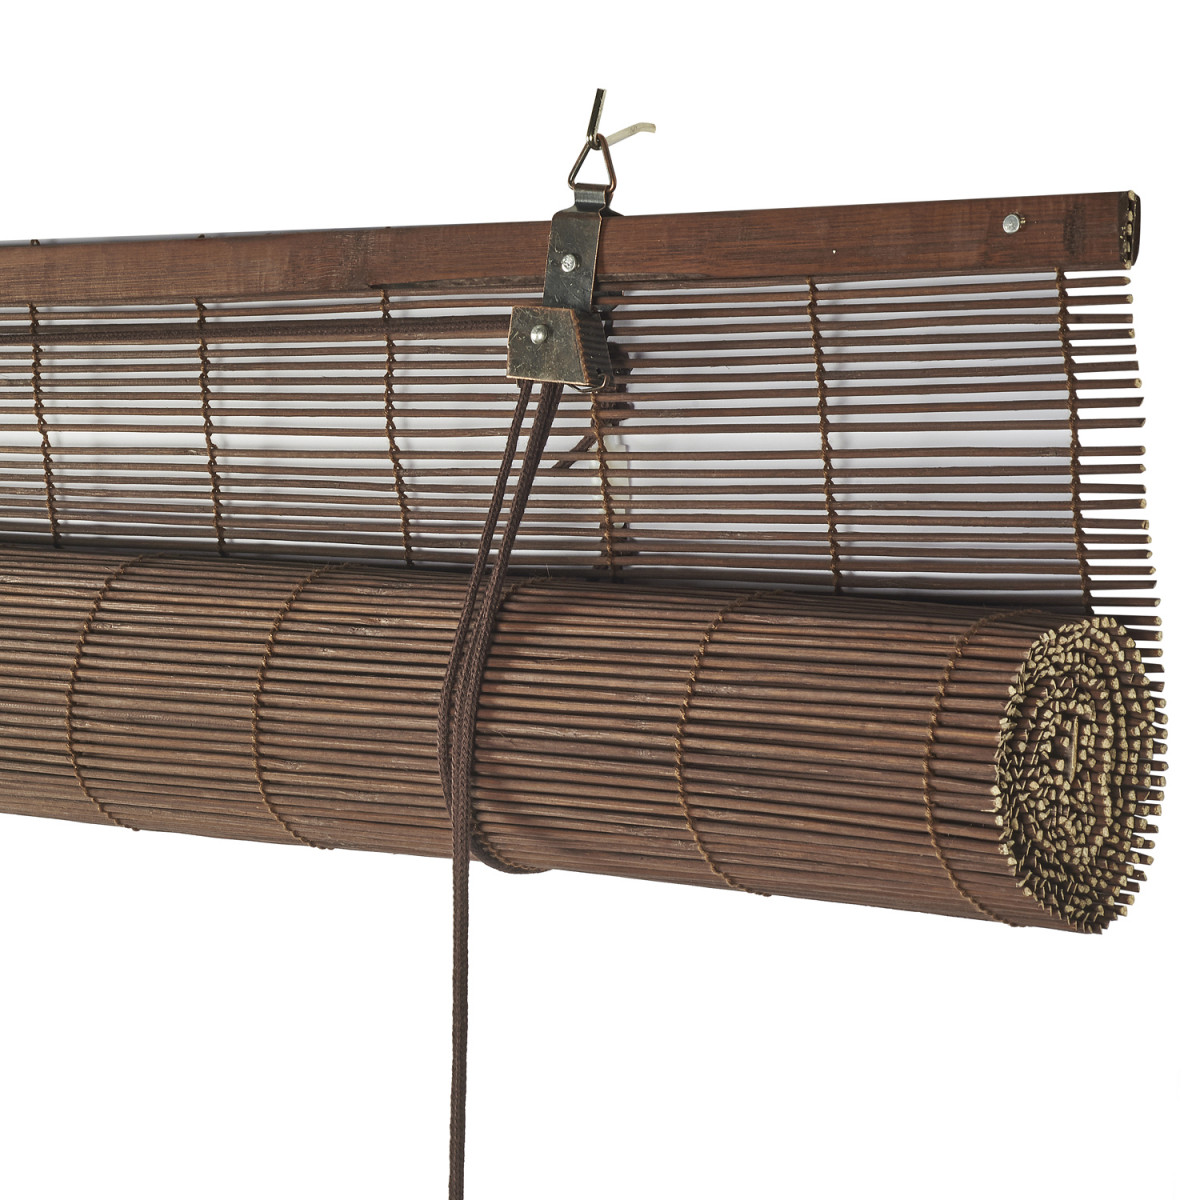 Estor enrollable de bambú marrón de 160 x 160 de alto con cortina de madera